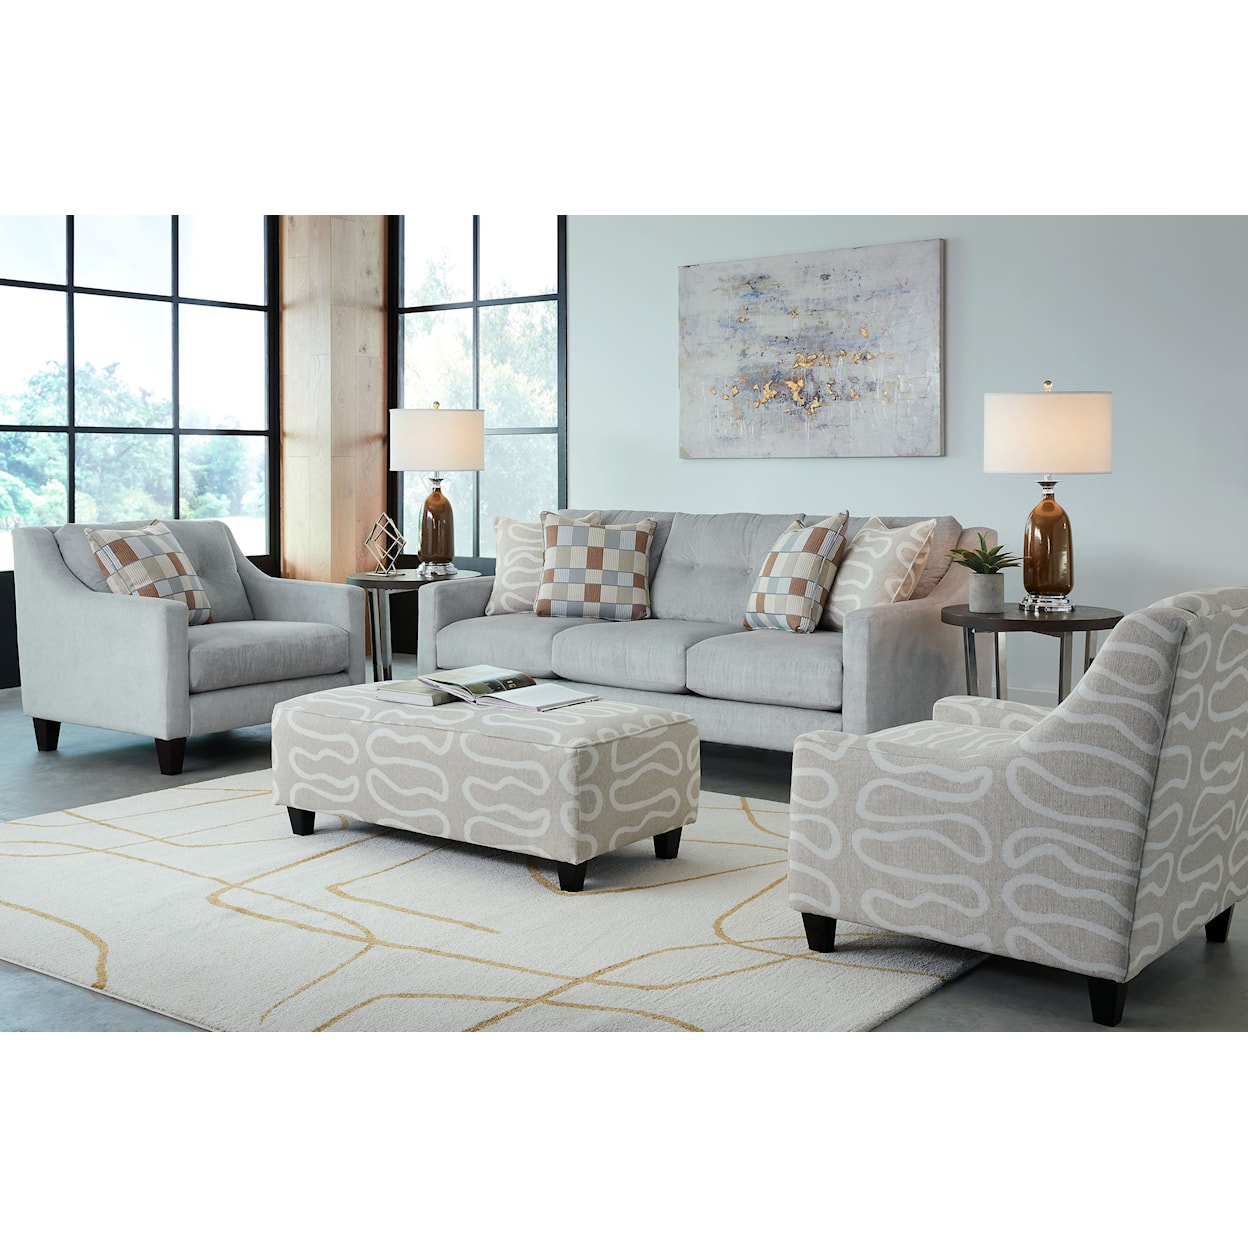 Fusion Furniture 5007B NOLA ARTIC Chair 1/2